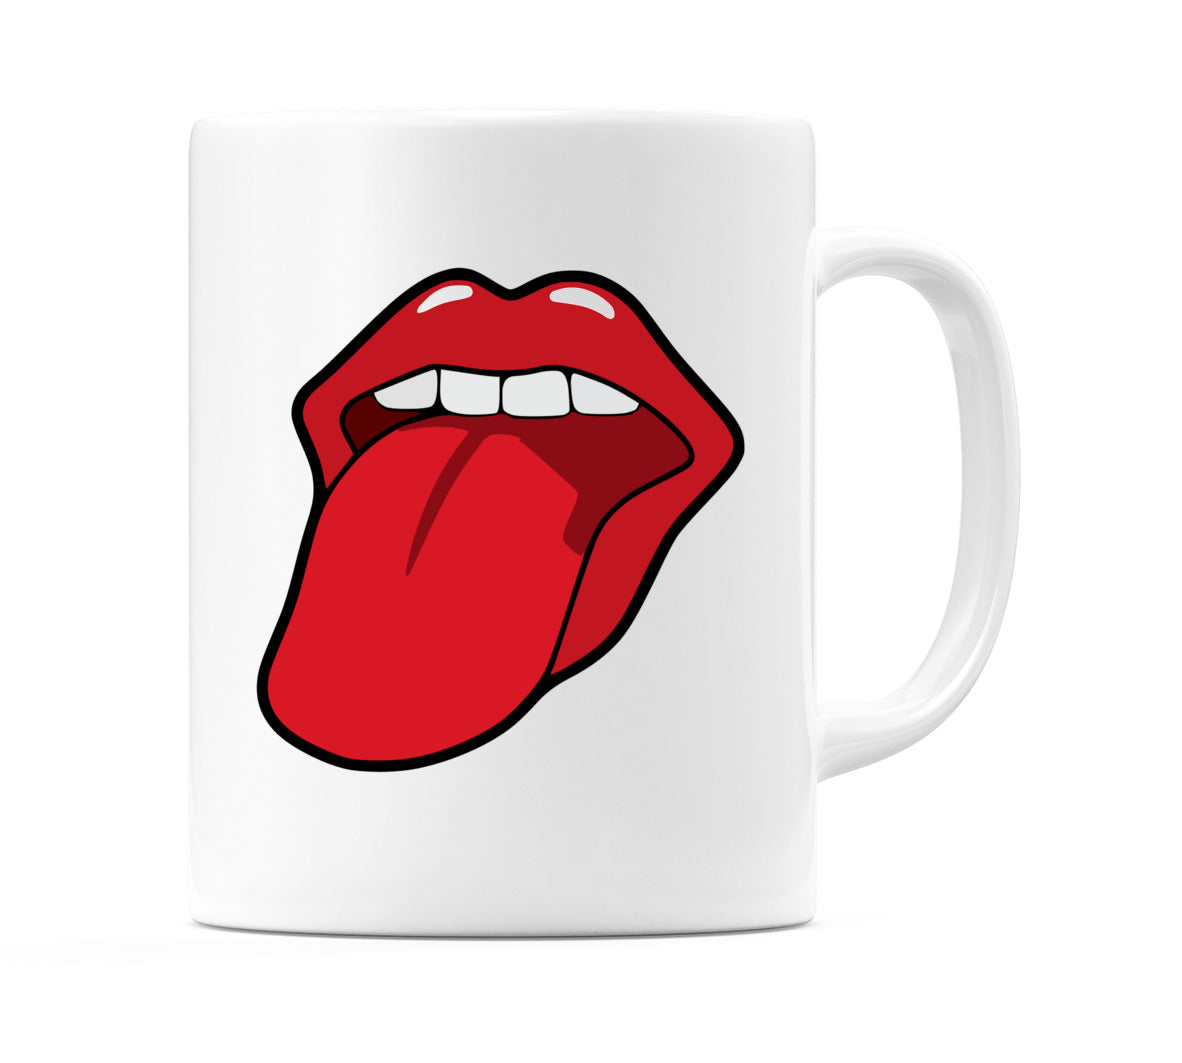 Rolling Stone style Tongue Mug